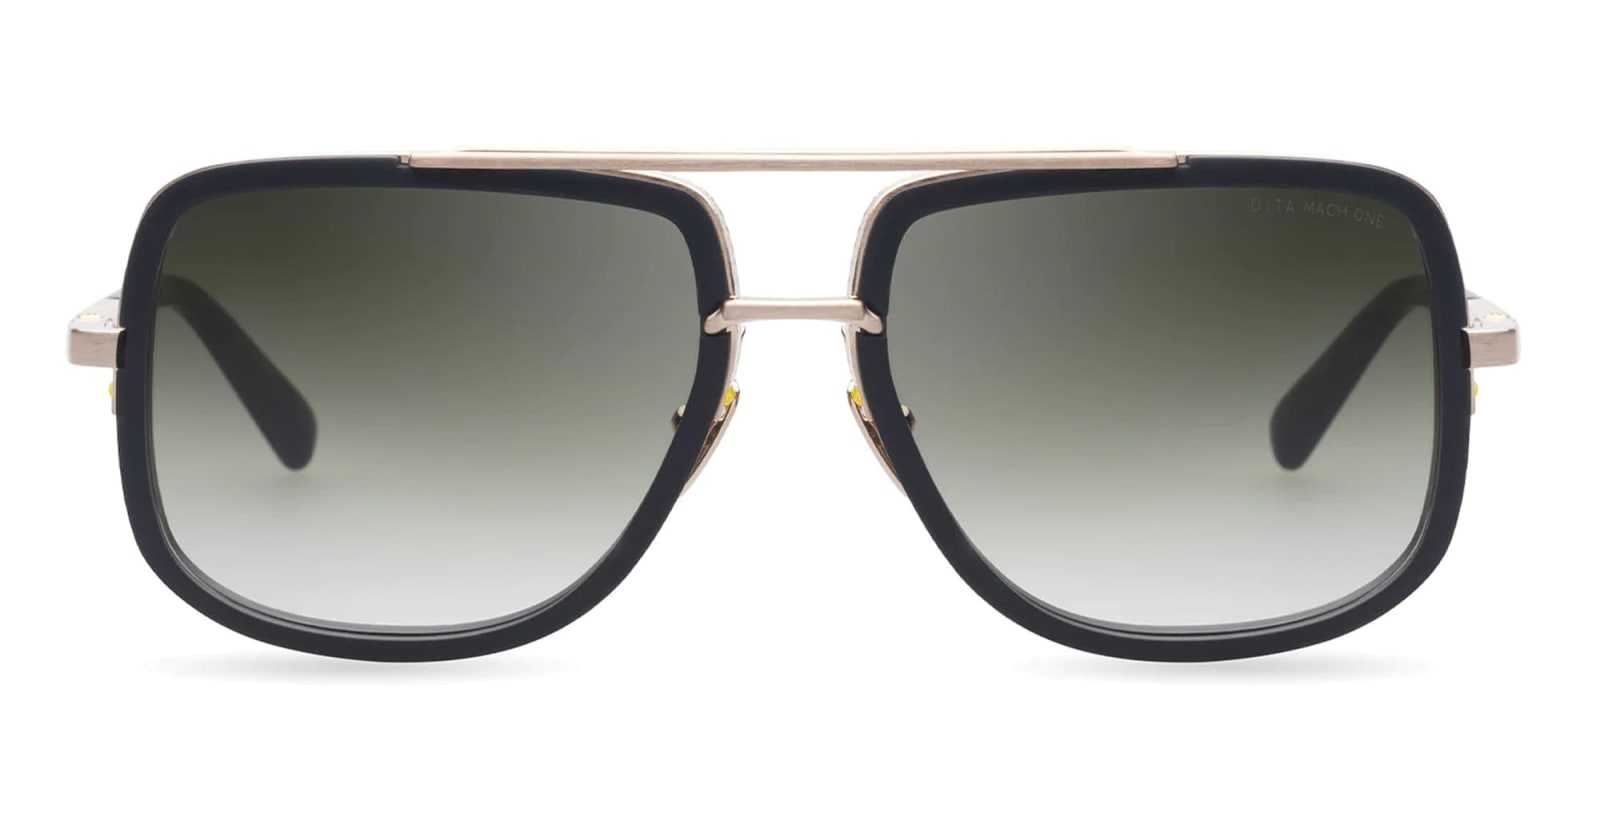 Dita Mach-one - Matte Black / Antique 12k Gold Sunglasses